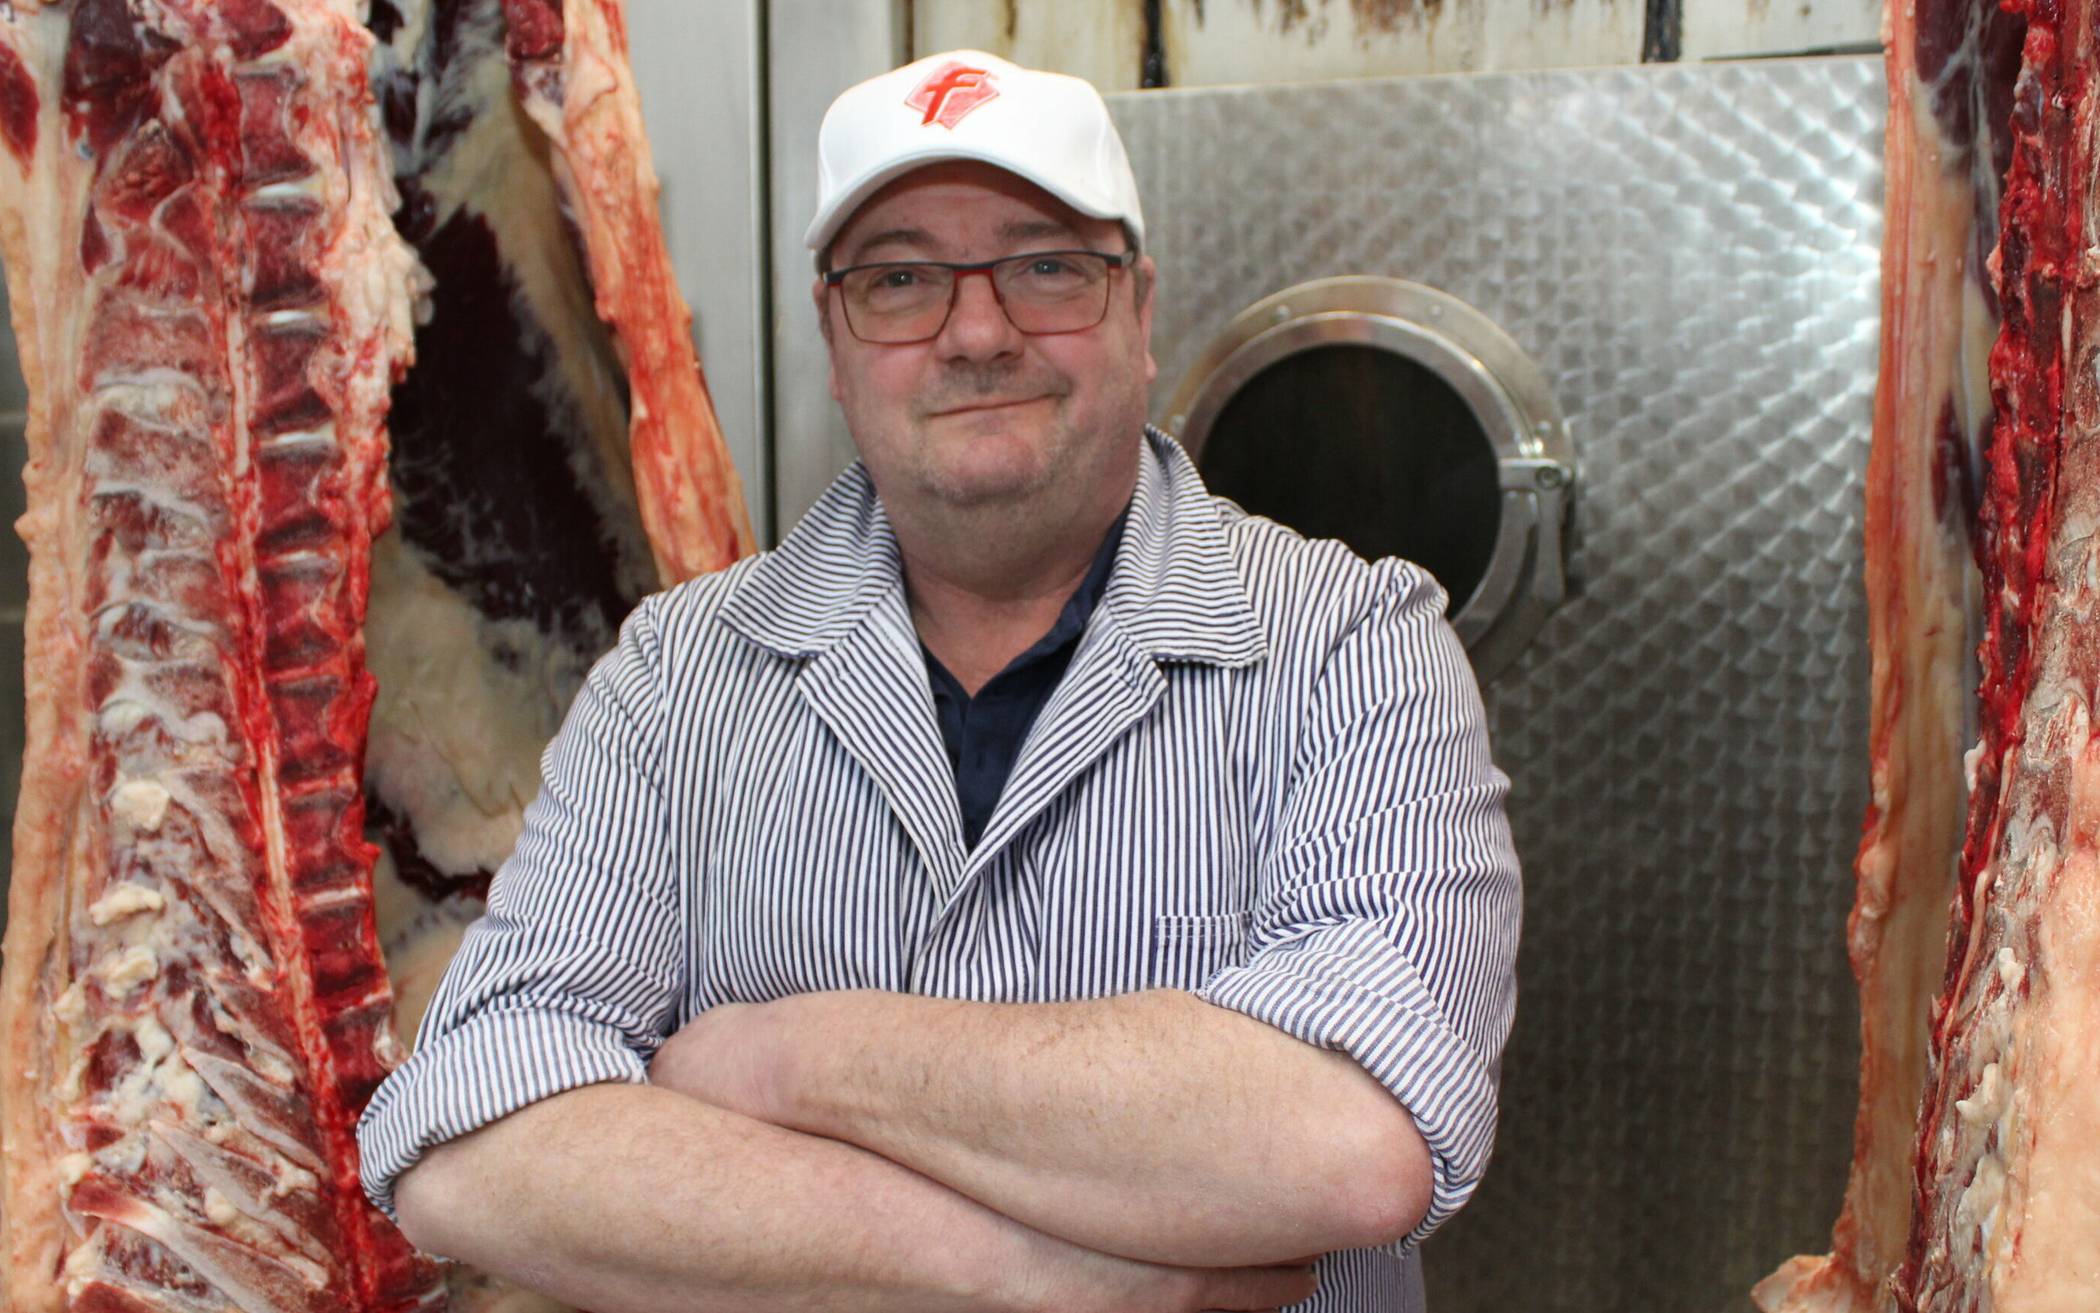  Fleischermeister Thomas Kluke bezieht die Tiere, die er verarbeitet, von kleineren Betrieben, darunter auch Landwirte aus Erkrath und Heiligenhaus.  